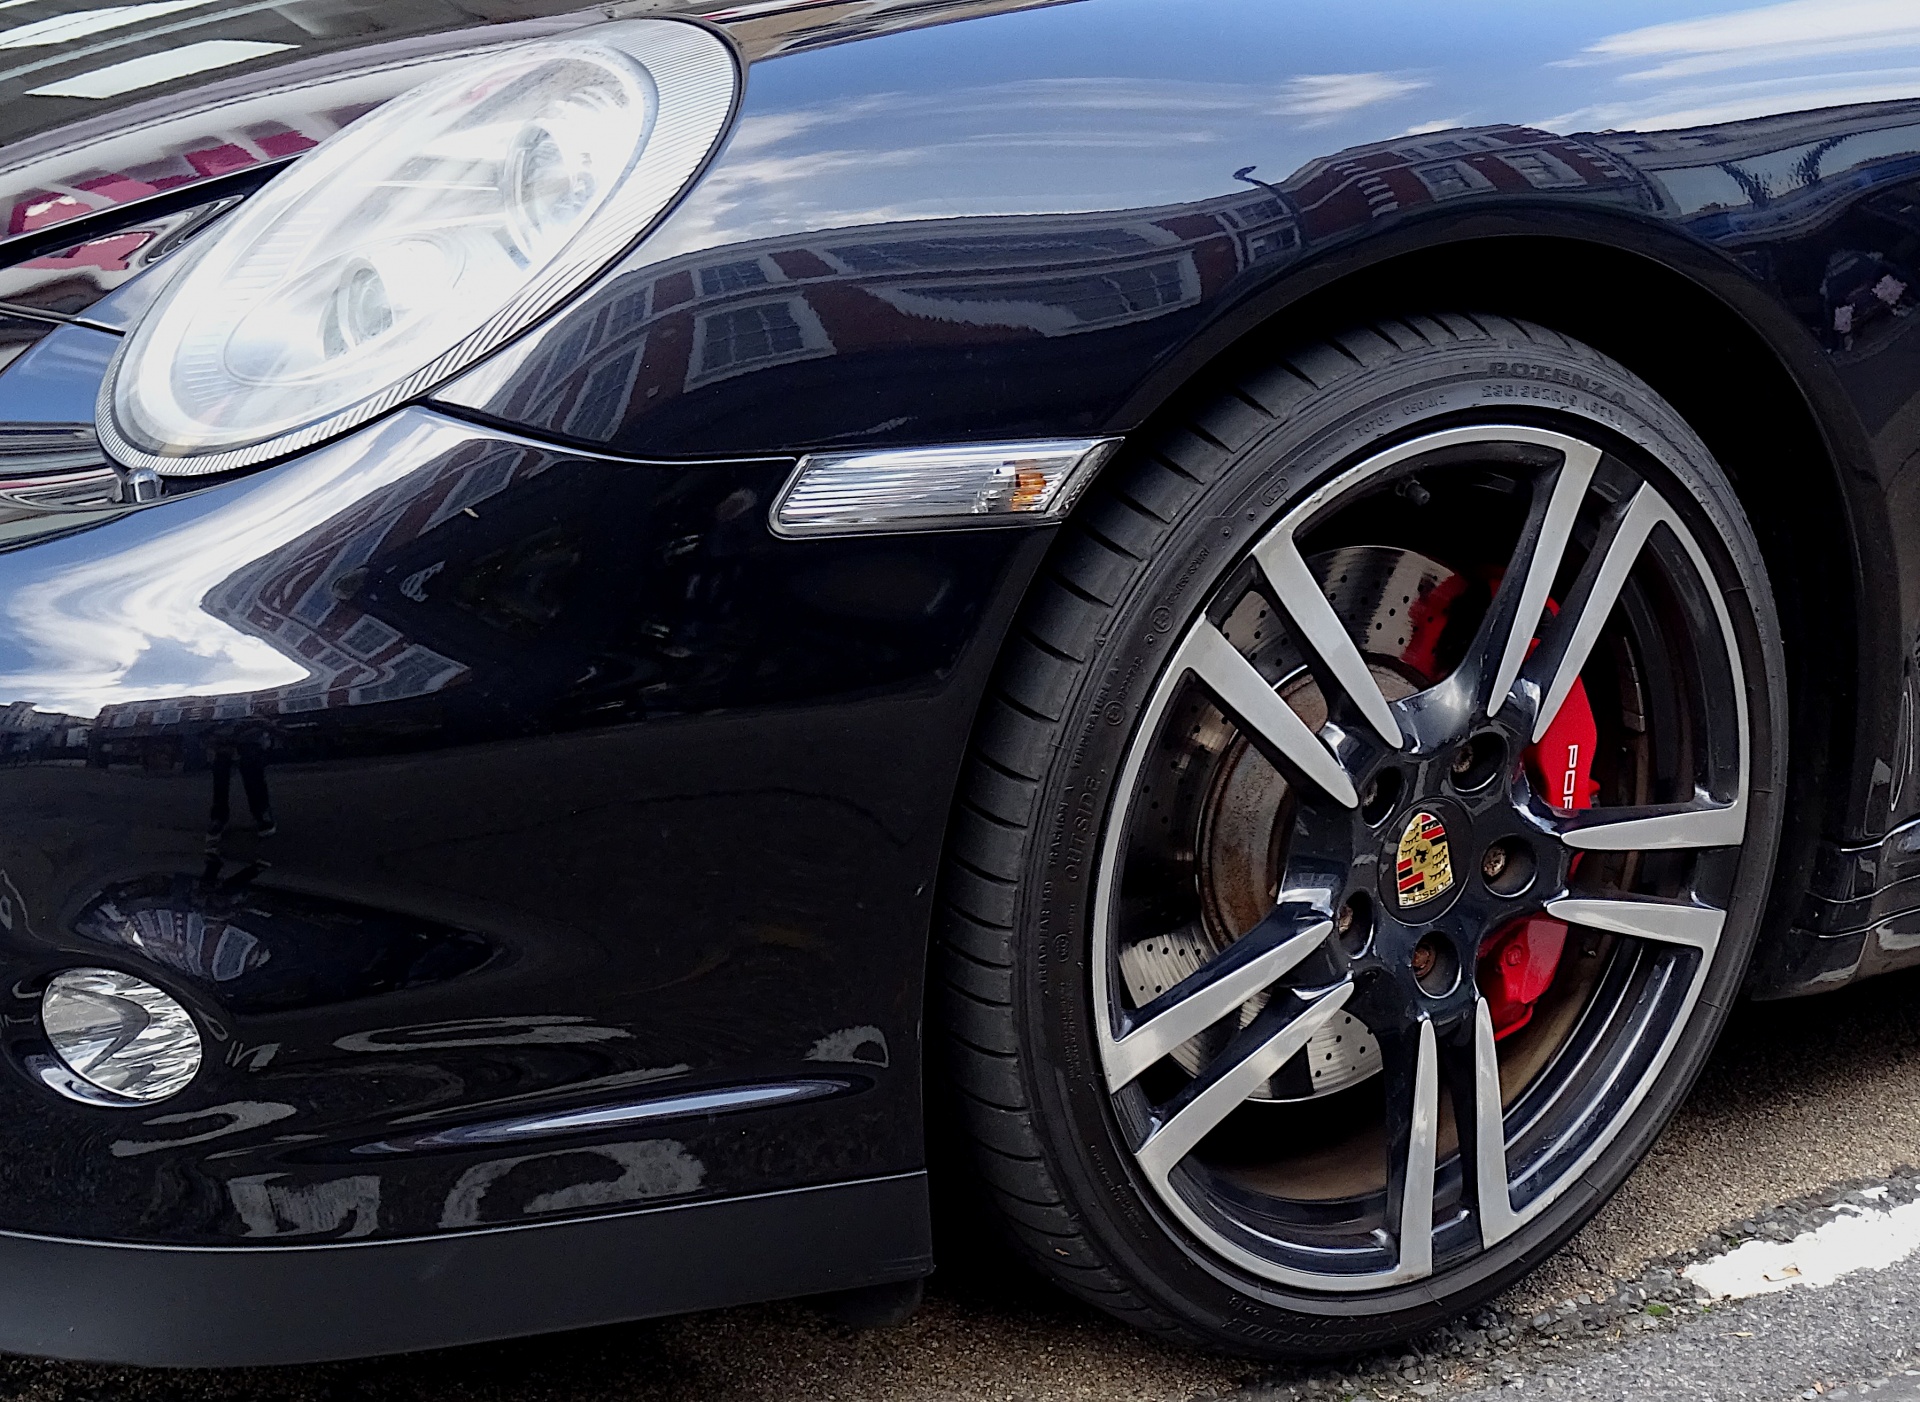 Convertible Porsche Car Front Wheel